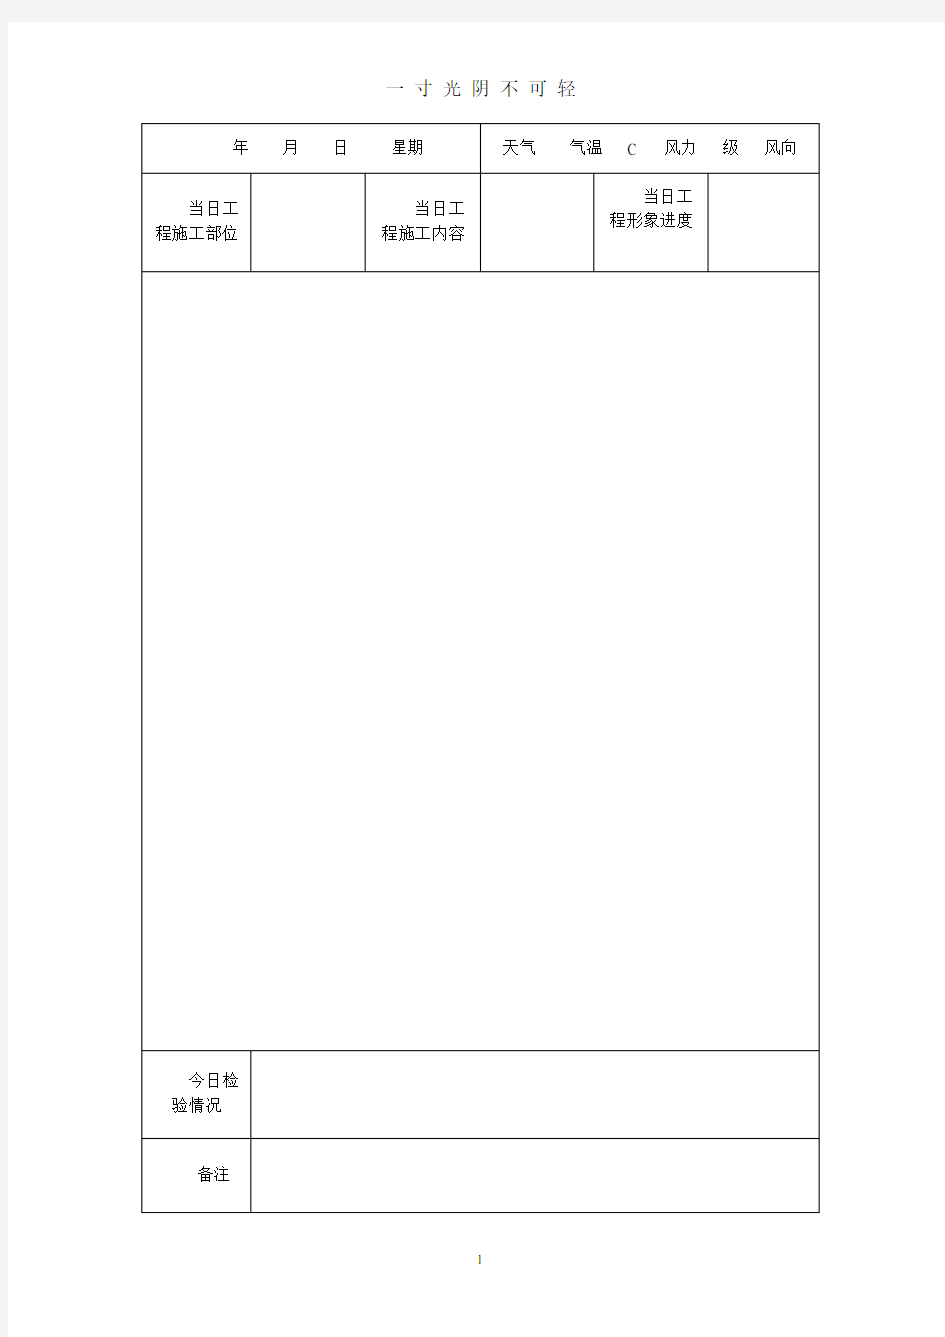 建筑施工工作日志表格.pdf